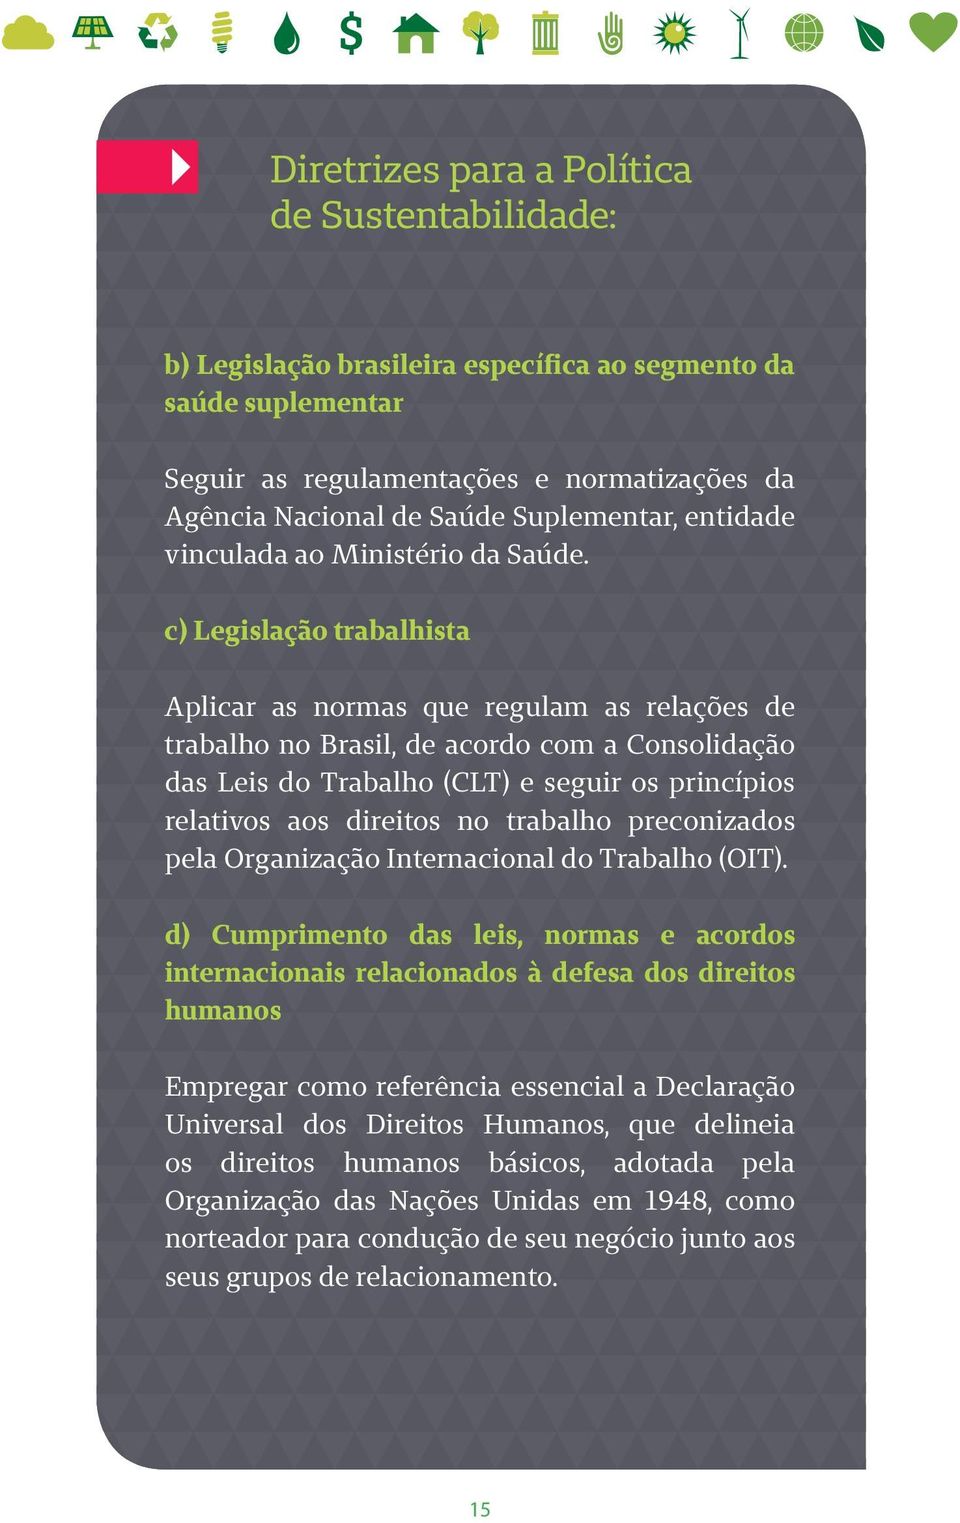 c) Legislação trabalhista Aplicar as normas que regulam as relações de trabalho no Brasil, de acordo com a Consolidação das Leis do Trabalho (CLT) e seguir os princípios relativos aos direitos no